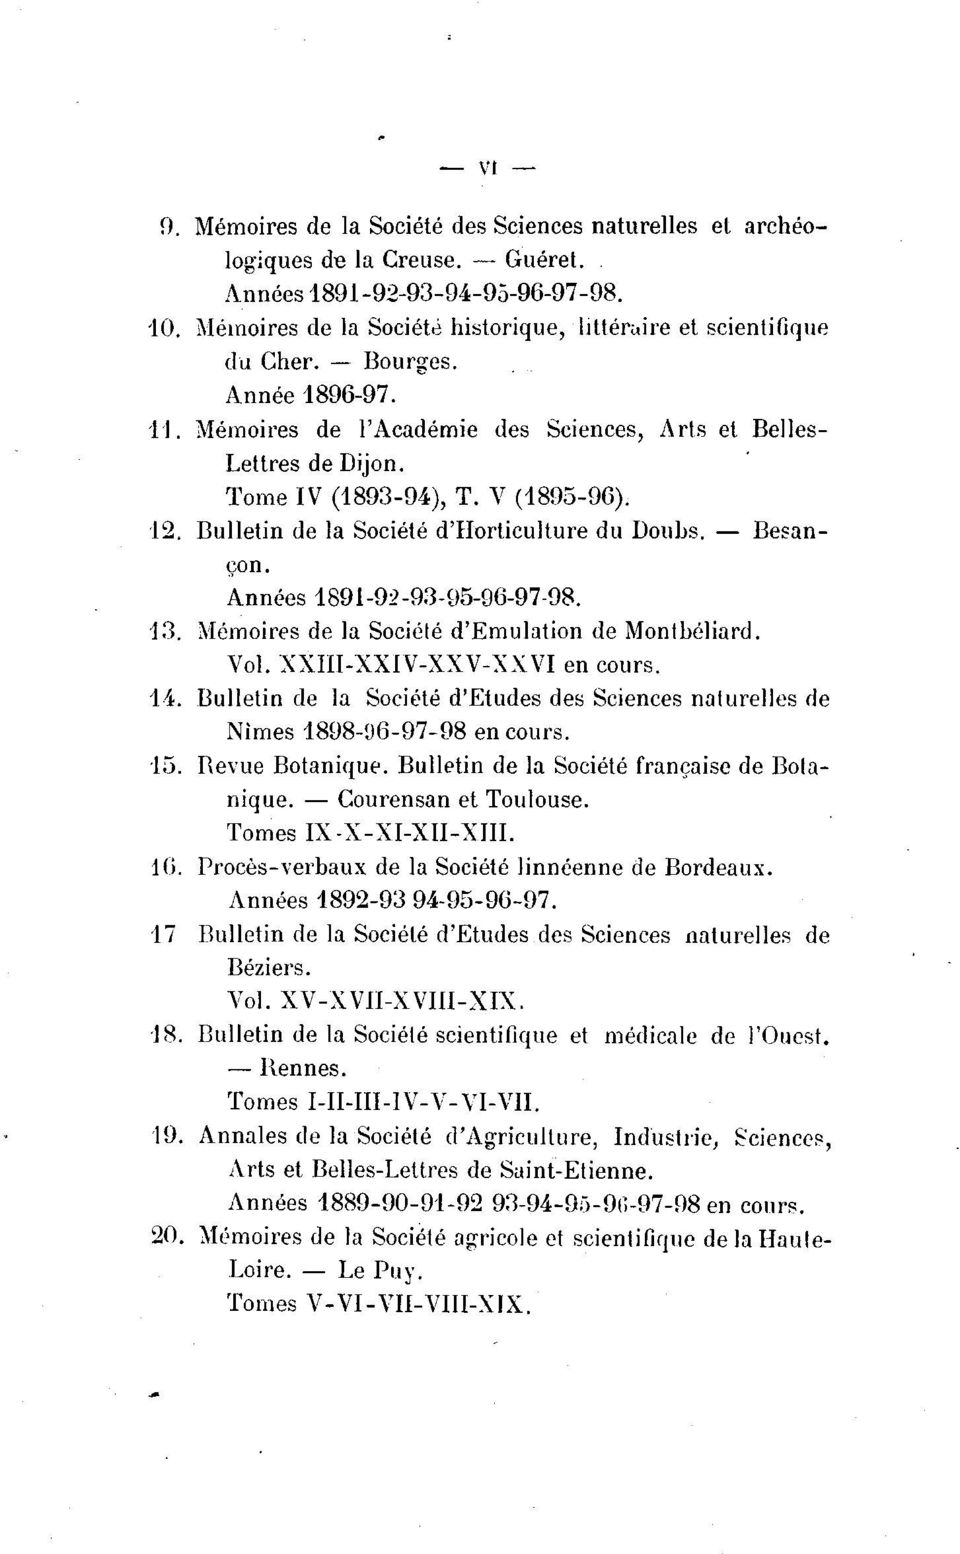 V (1895-96). 12. Bulletin de la Société d'horticulture du Doubs. - Besançon. Années 1891-92-93-95-96-97-98. 13. Mémoires de la Société d'emulation de Montbéliard. Vol. XXIII-XXIV-XXV-XXVI en cours.